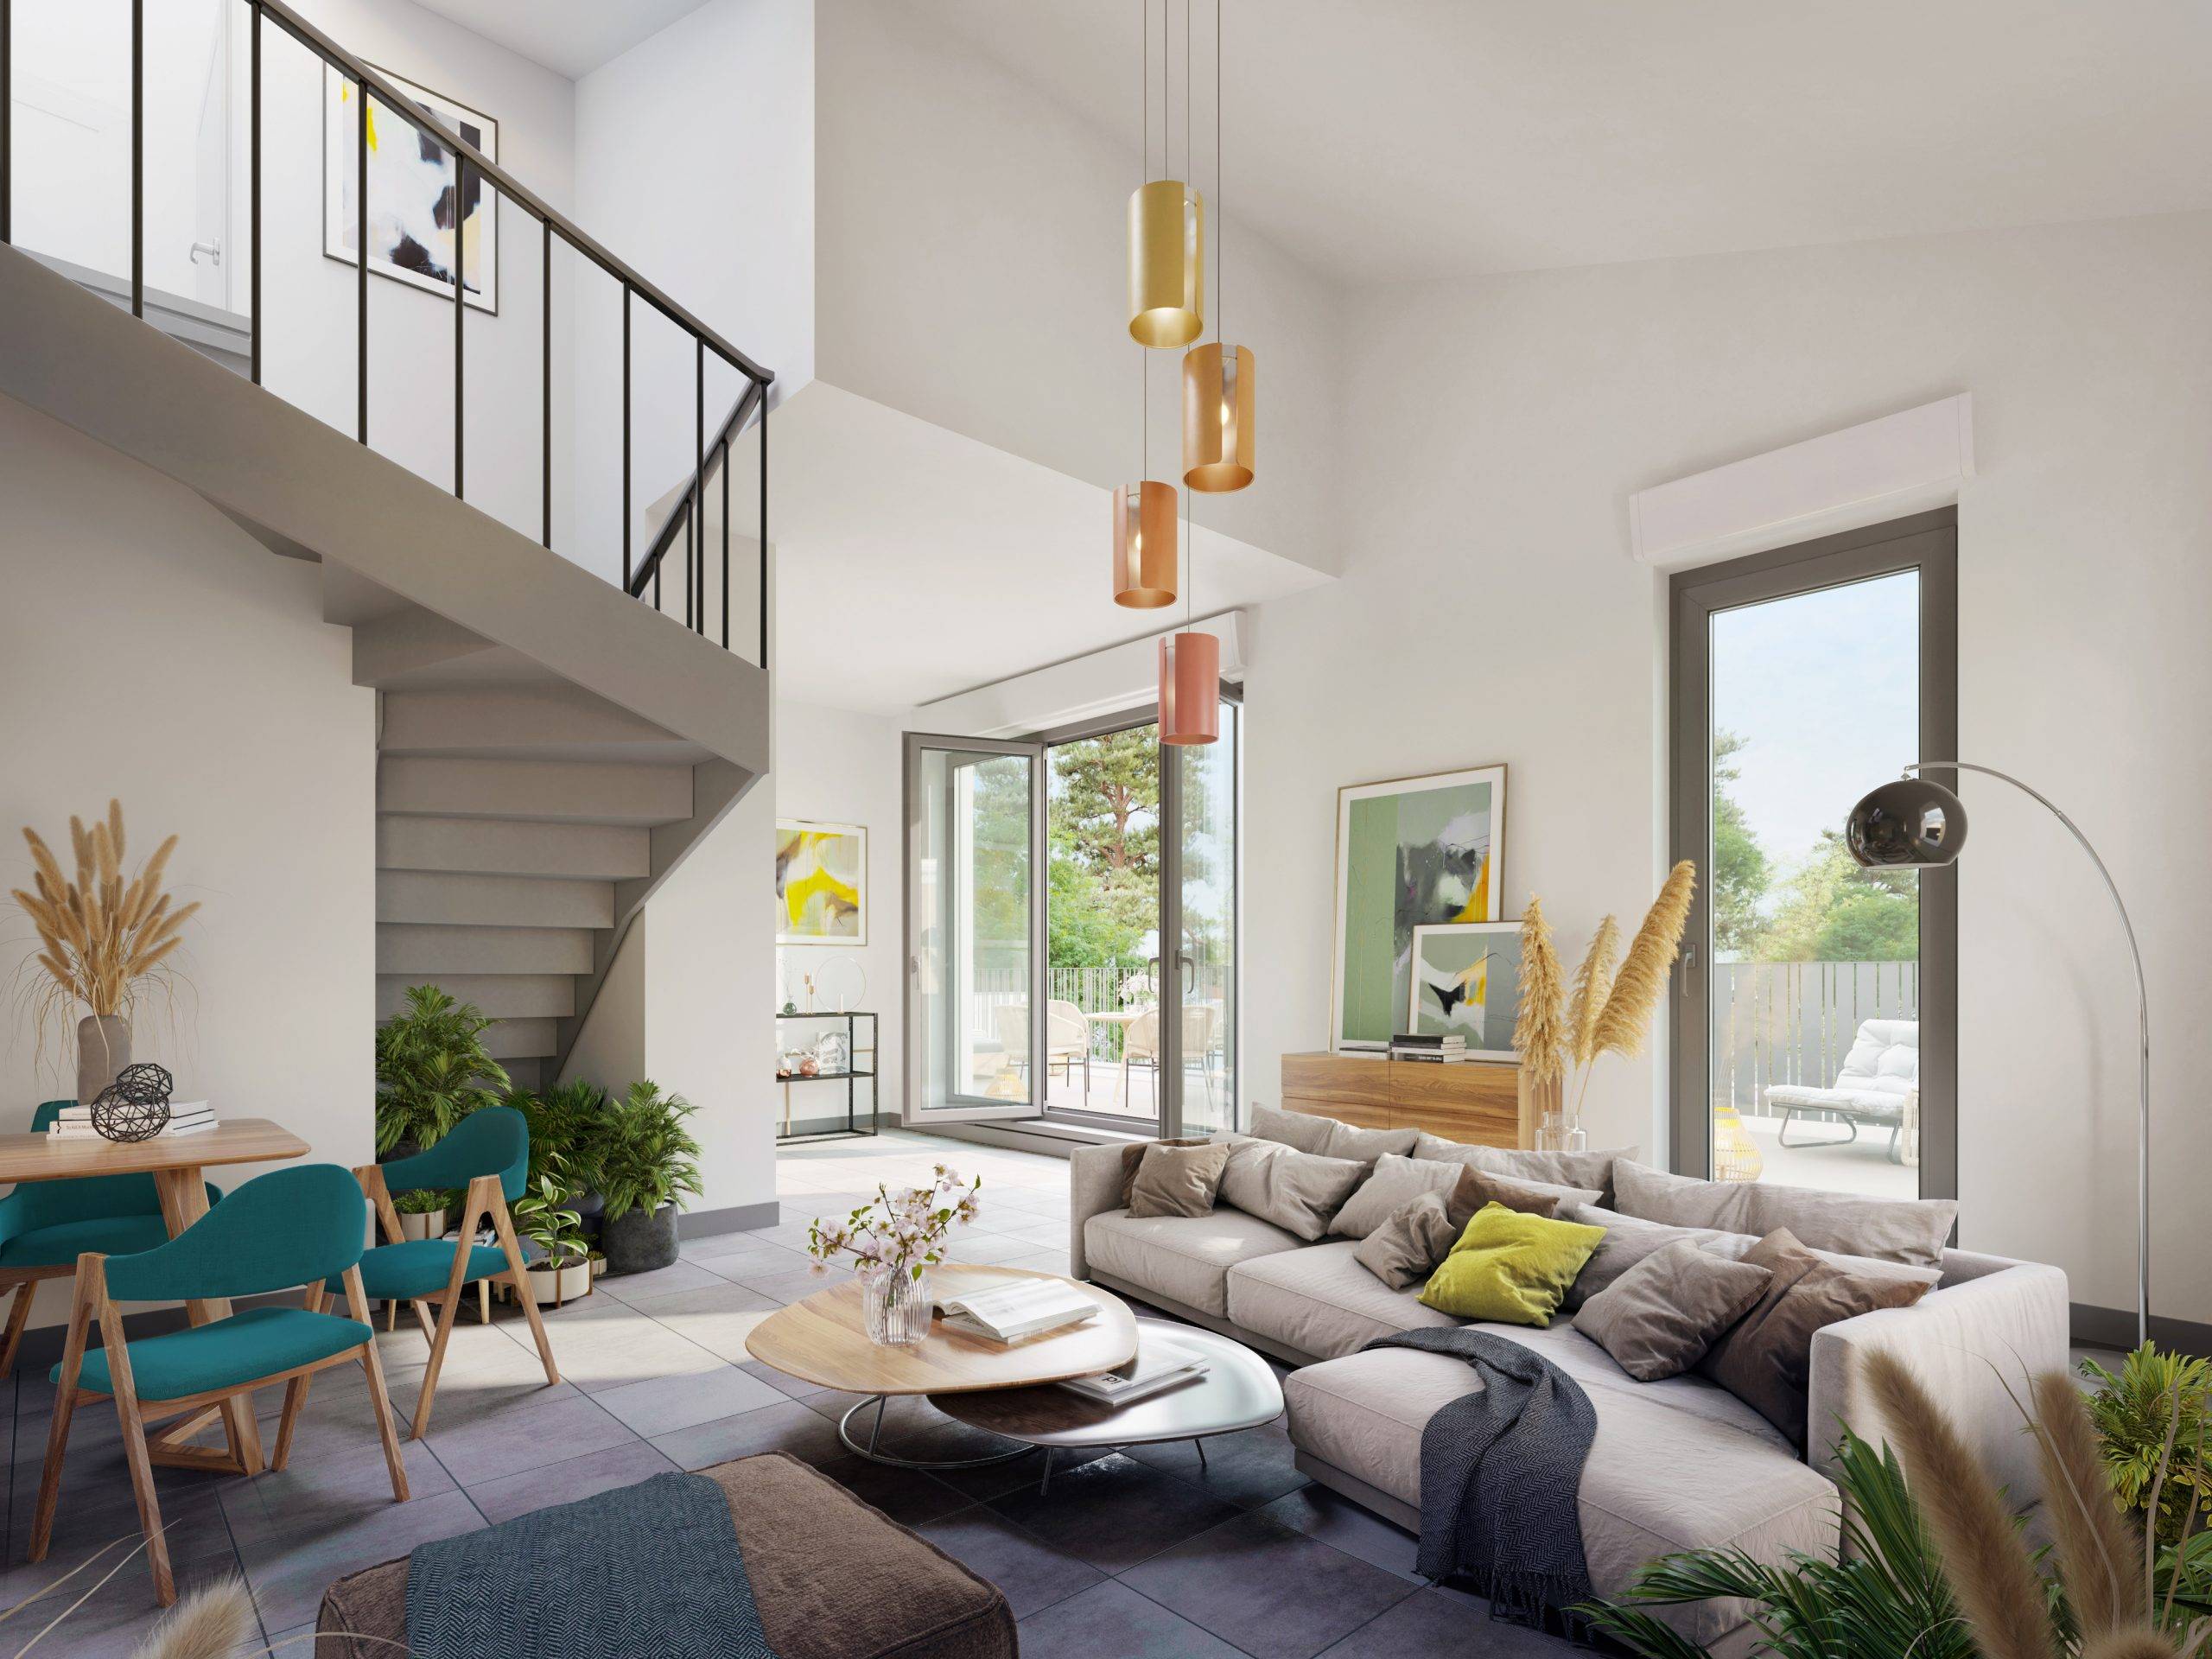 Hive Co BEB - Faubourg République – Appartements neufs du 2 au 4 pièces – BELLEVILLE-EN-BEAUJOLAIS